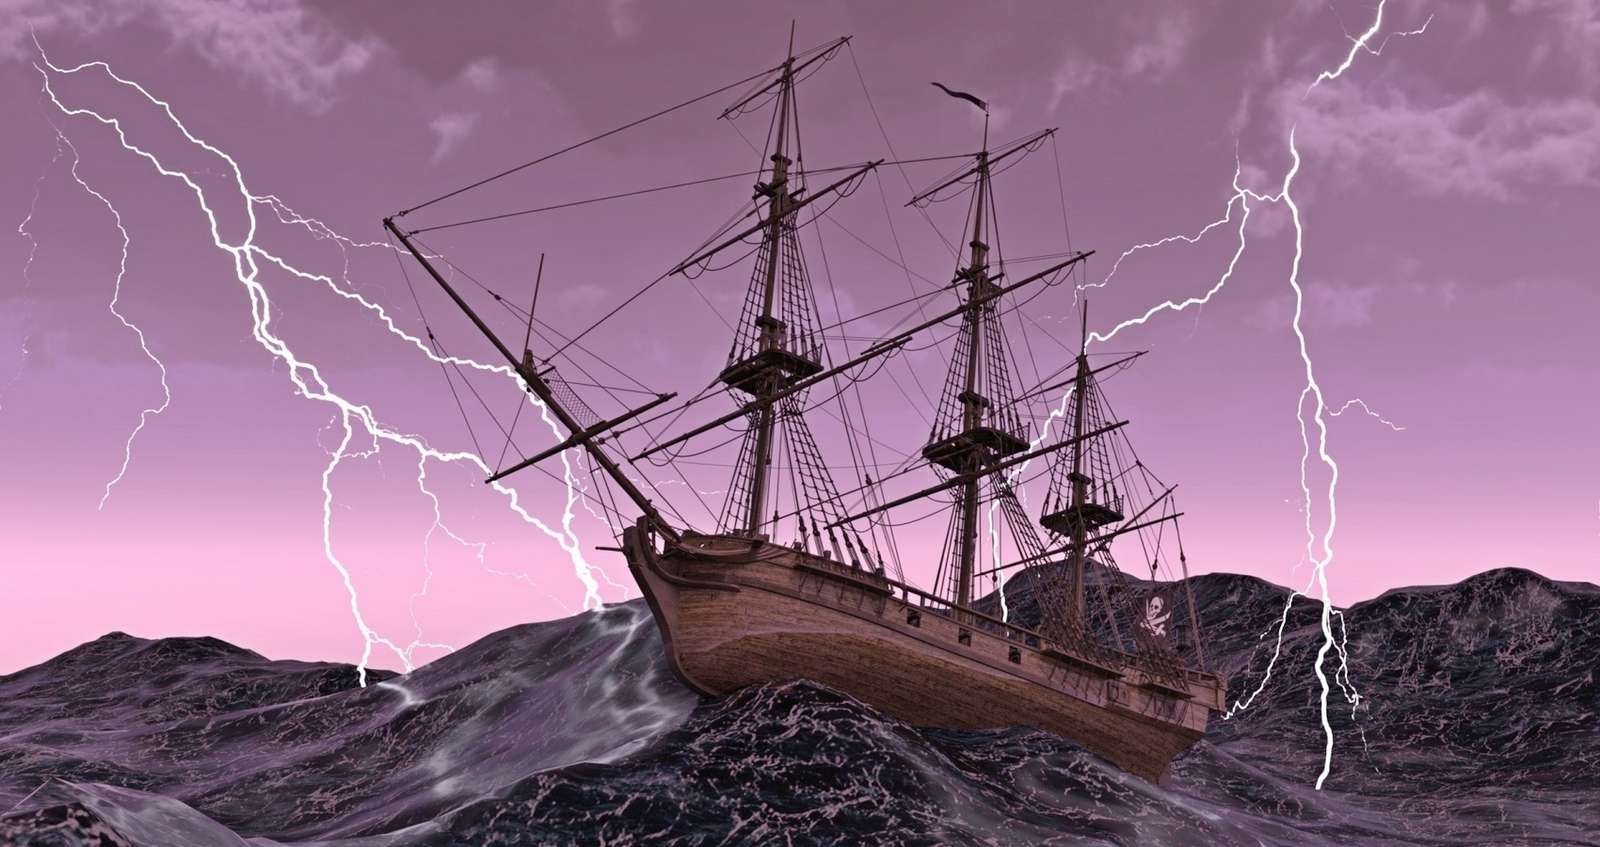 Piratenboot Puzzlespiel online